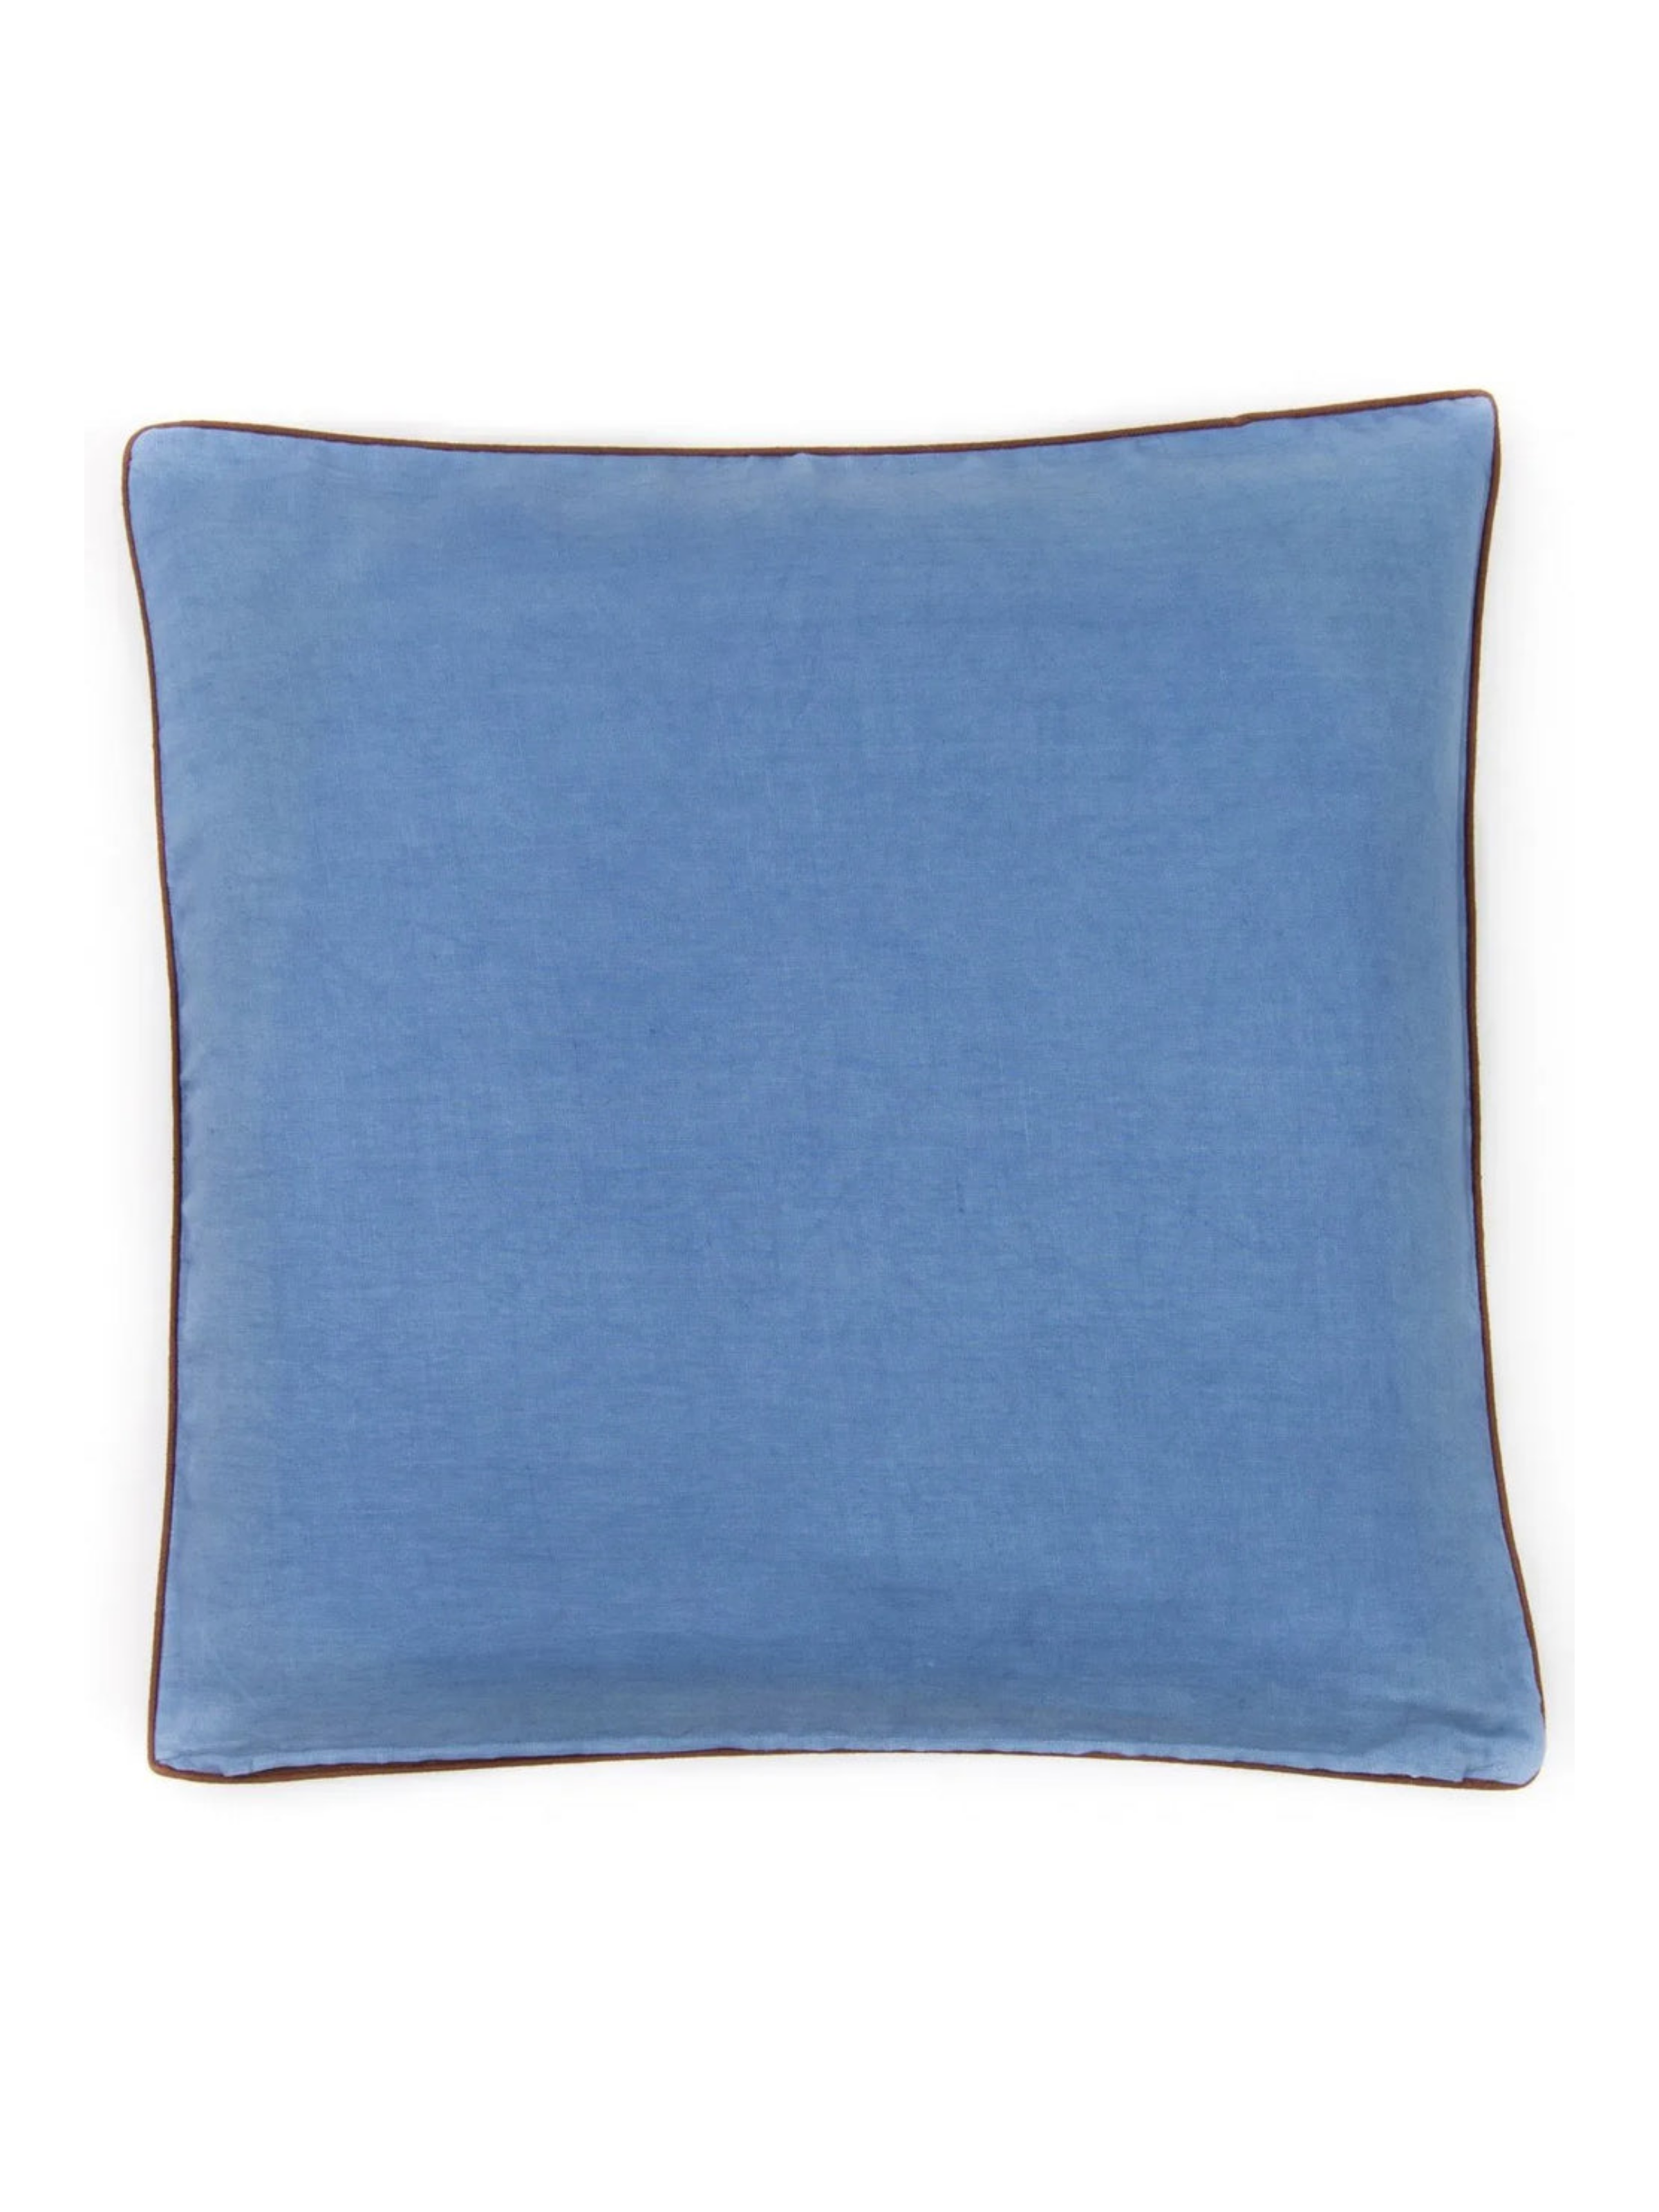 Linen Dyed Pillows